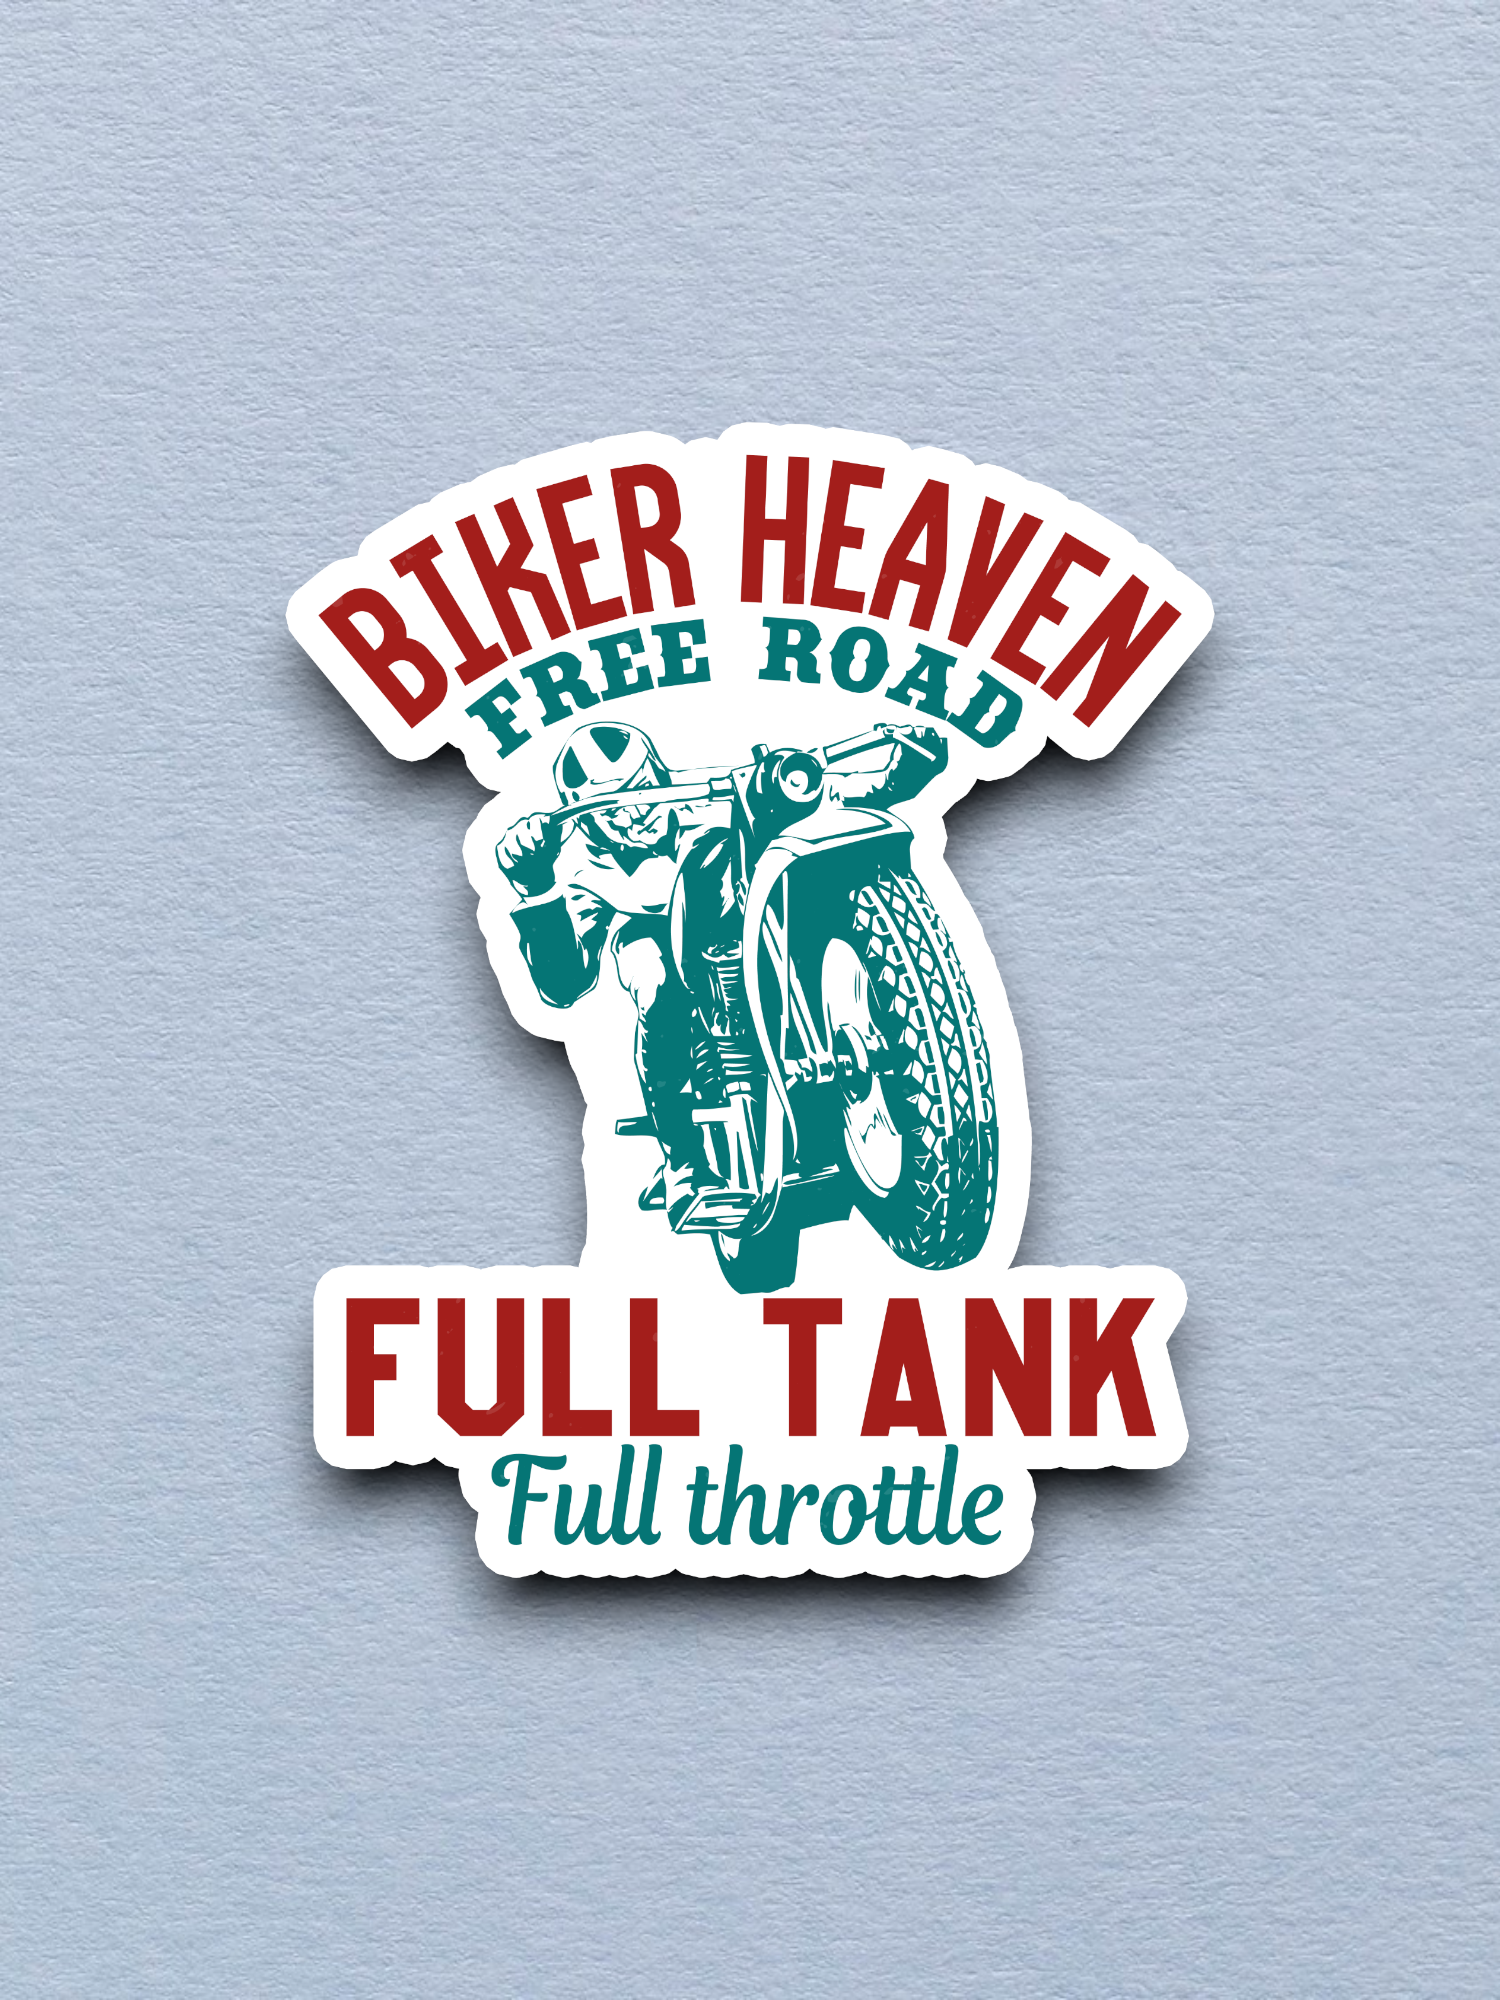 Biker Heaven Free Road Full Tank Full Throttle Sticker